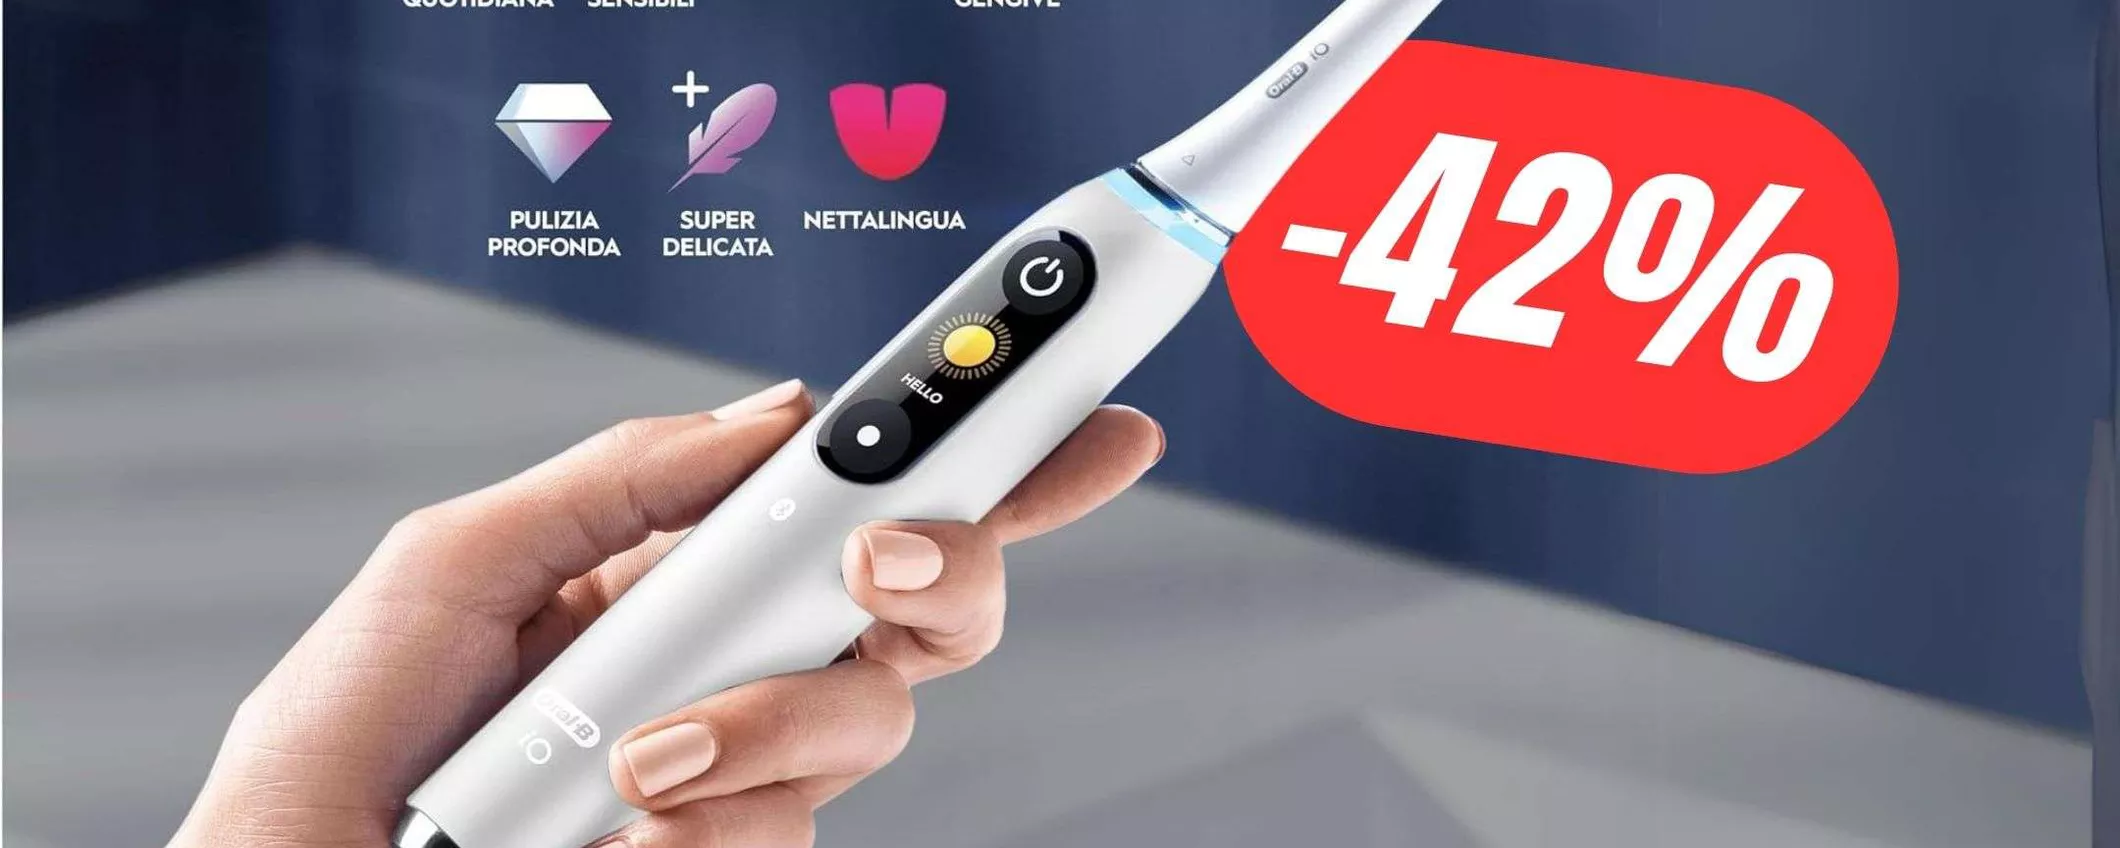 SCONTO DI 220€ per questo Spazzolino Elettrico Oral-B iO 9N con Intelligenza Artificiale!